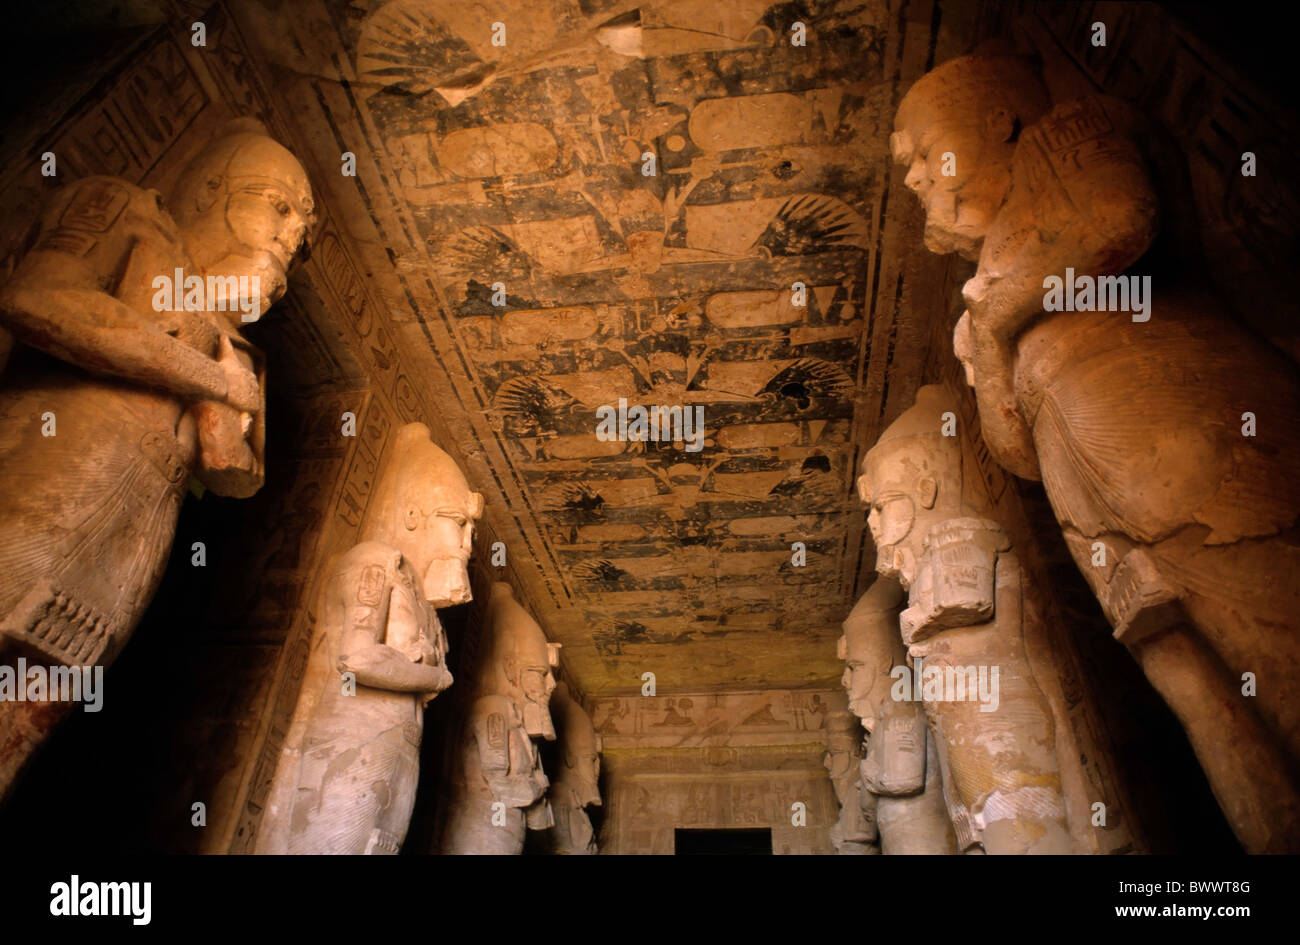 Riesige Statuen / Säulen in der Säulenhalle im Inneren der größeren Abu Simbel Tempel, Nubien, Ägypten. Stockfoto